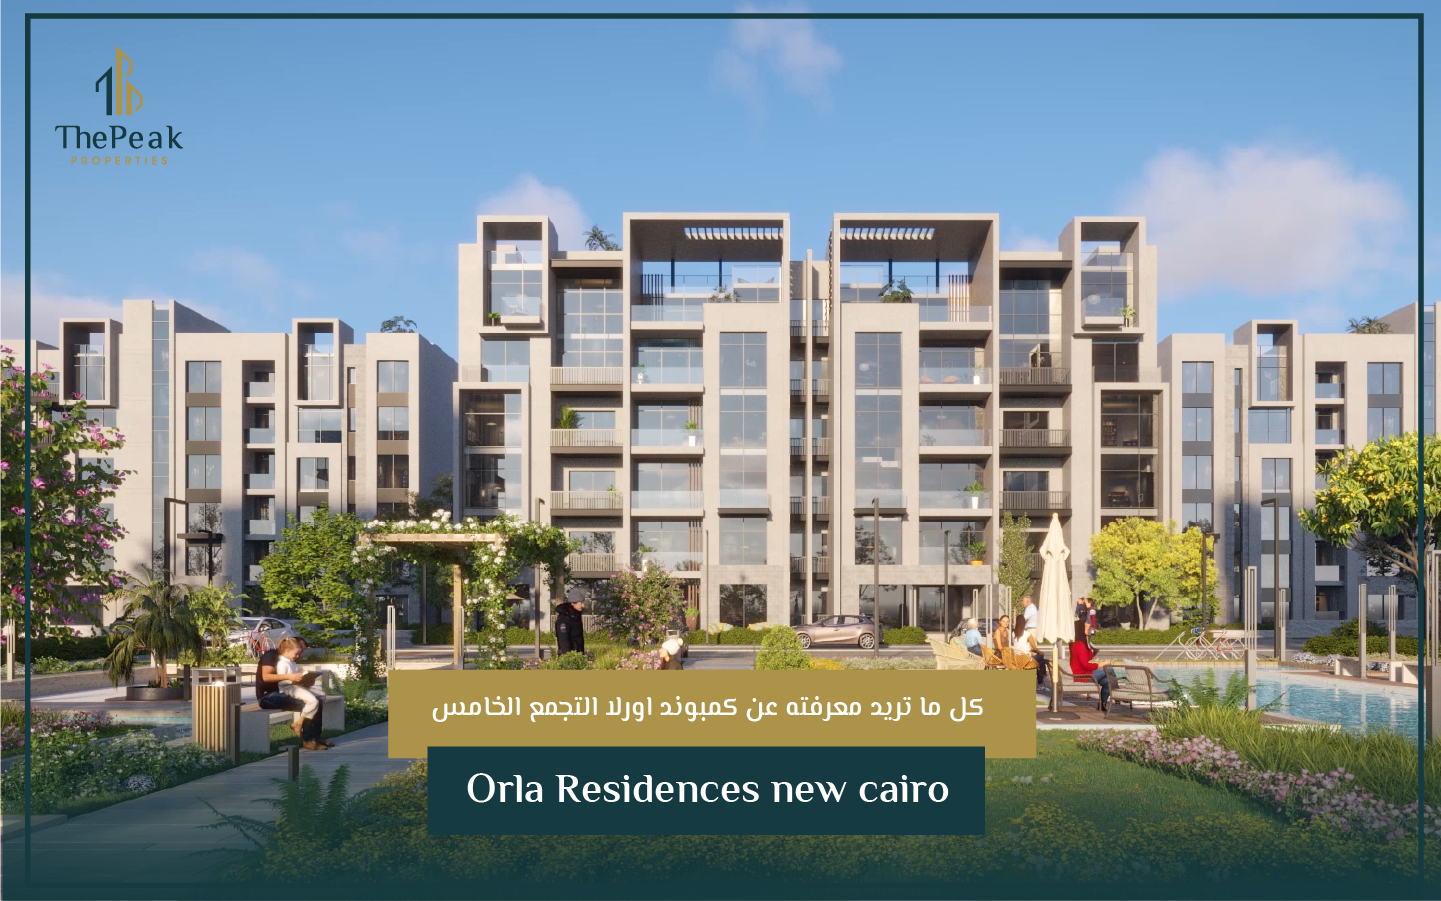 "شقة للبيع بالتجمع الخامس  مساحة 142 متر  مقدم 5% وتقسيط حتي 6 سنوات  في مشروع Orla Residence Compound, New Cairo" | THE PEAK PROPERTIES